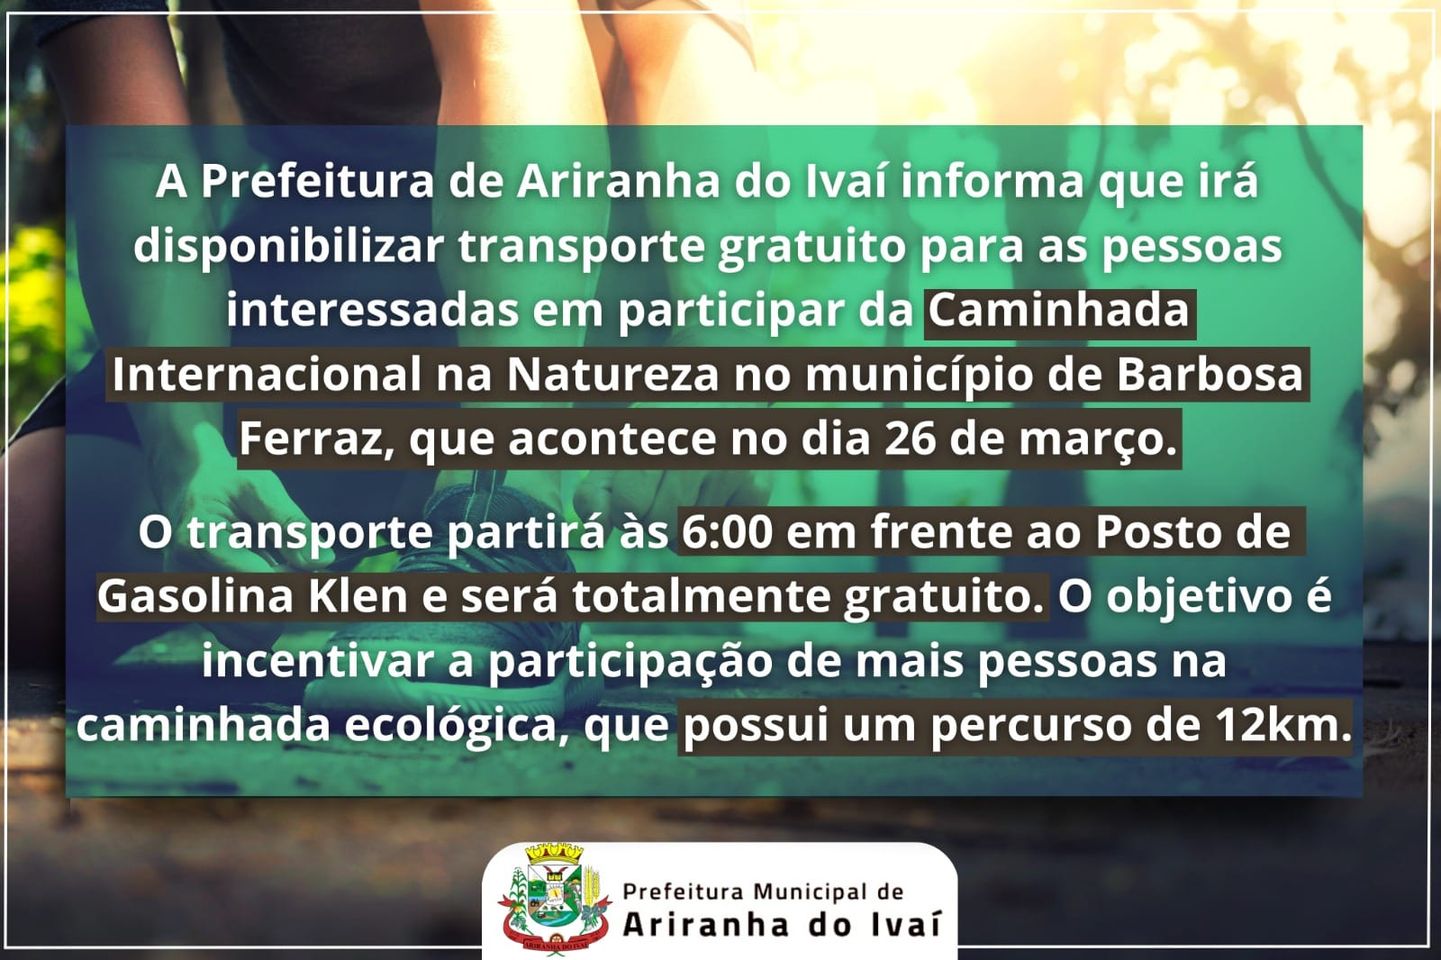 Prefeitura de Ariranha do Ivaí oferece transporte gratuito para caminhada ecológica em Barbosa Ferraz